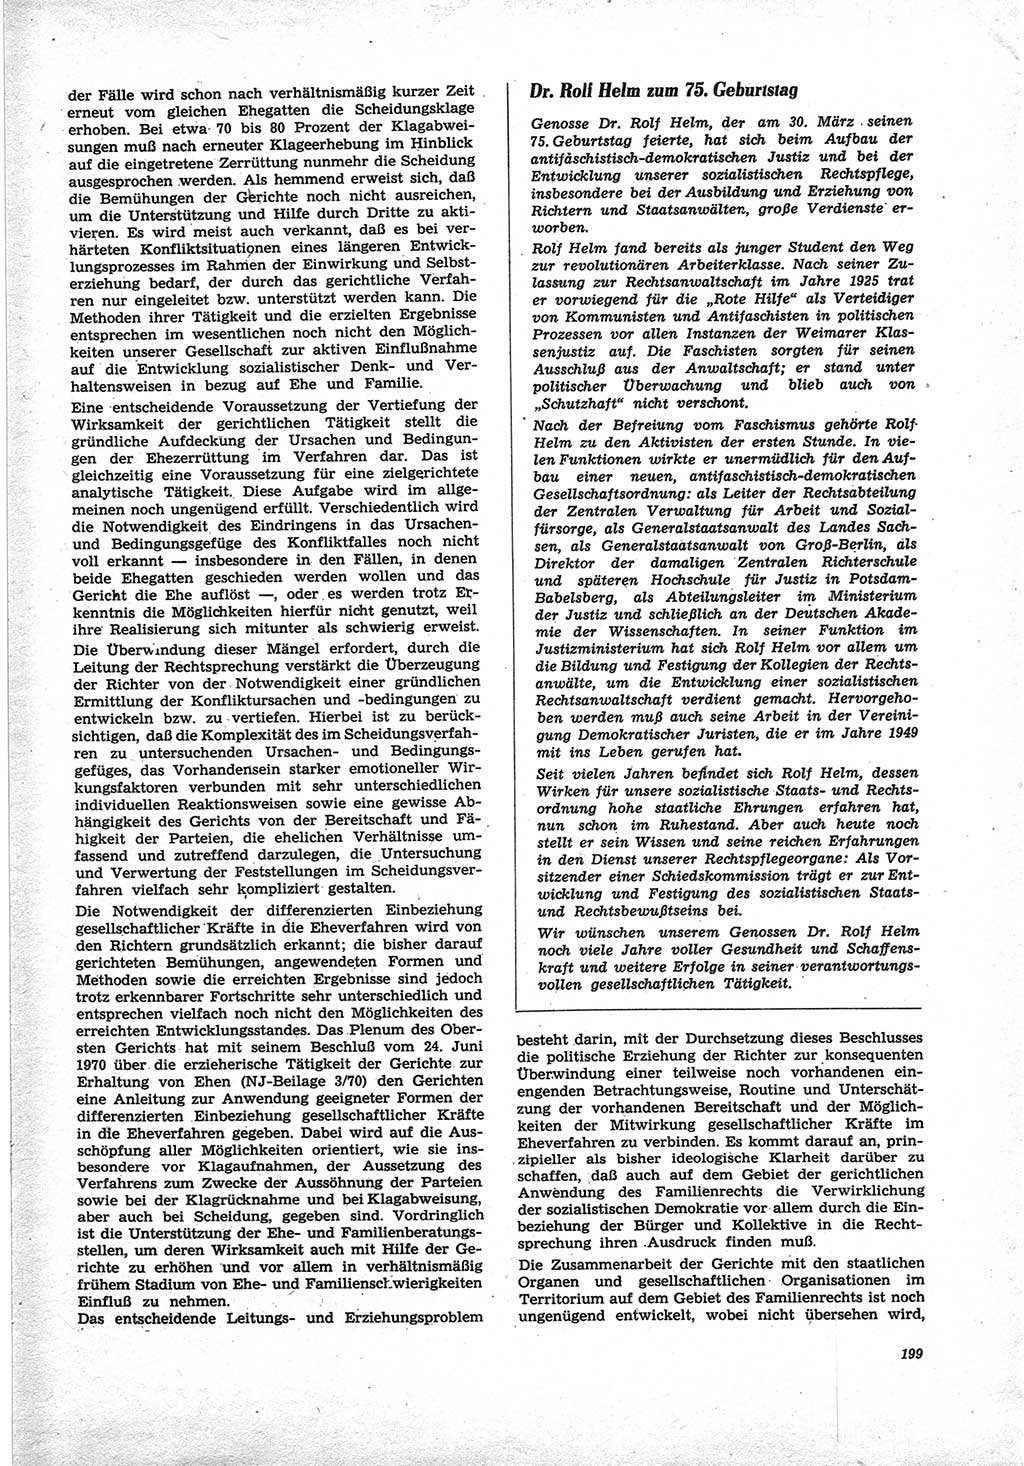 Neue Justiz (NJ), Zeitschrift für Recht und Rechtswissenschaft [Deutsche Demokratische Republik (DDR)], 25. Jahrgang 1971, Seite 199 (NJ DDR 1971, S. 199)